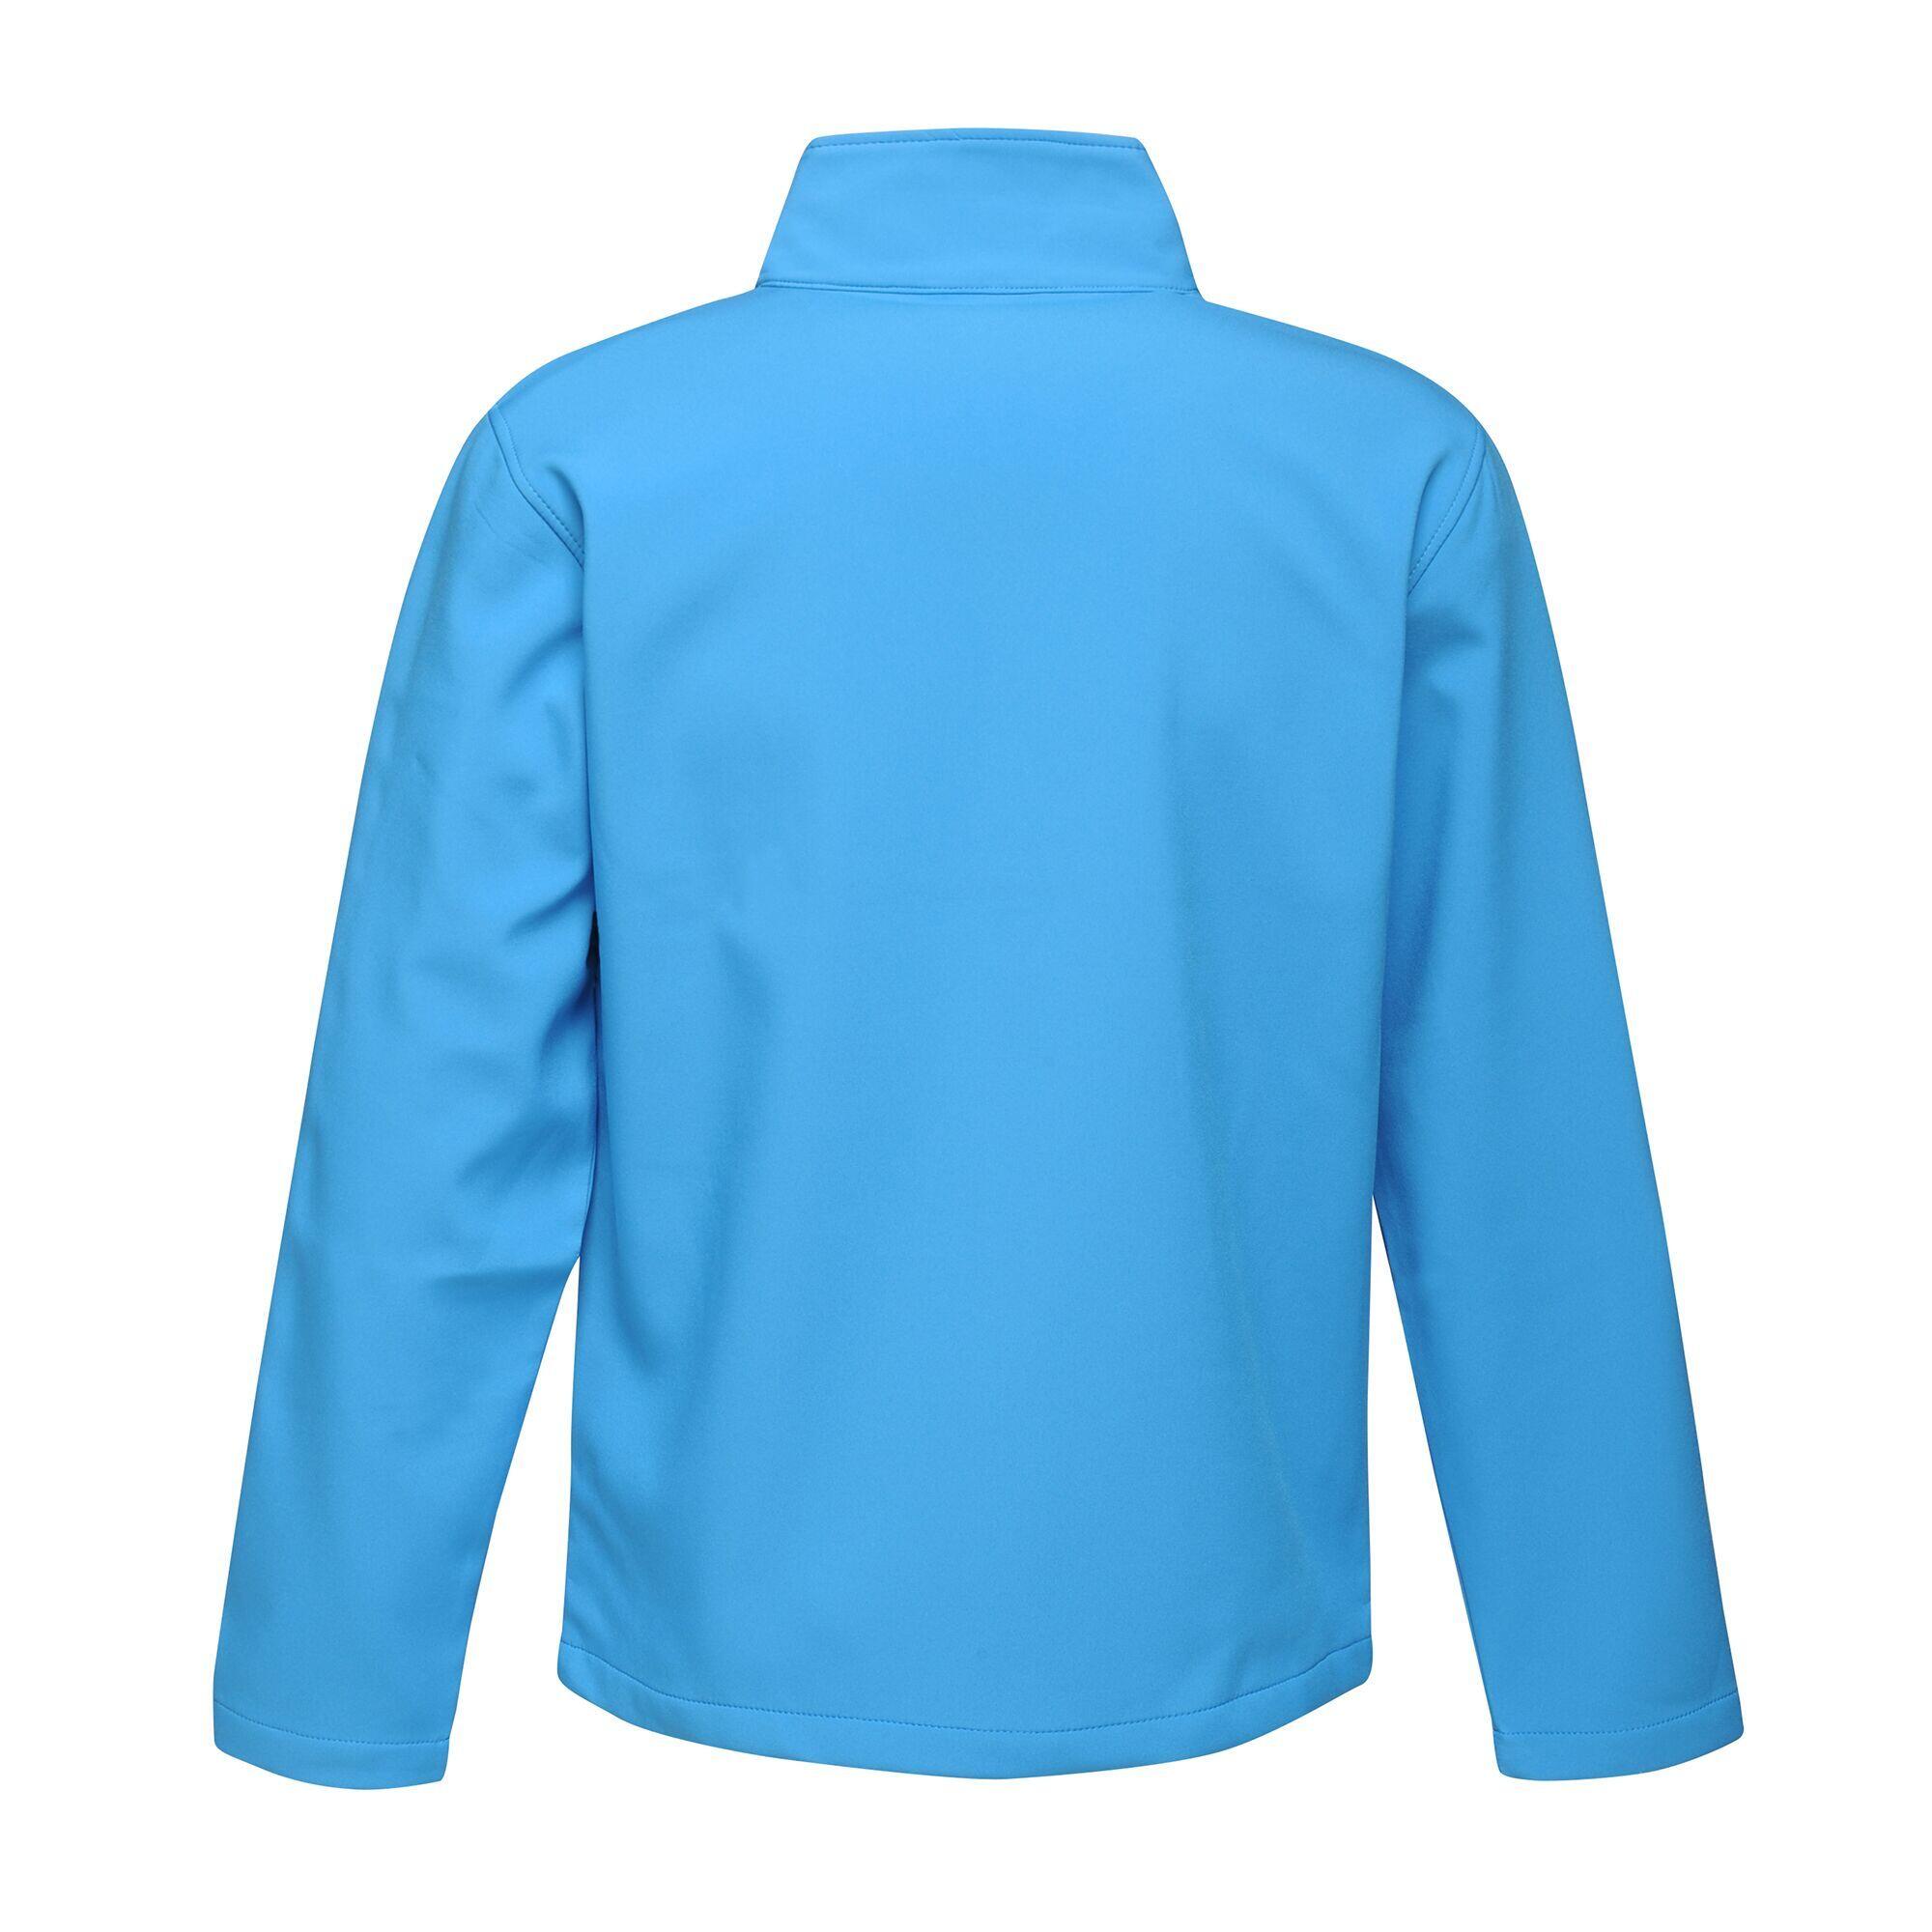 Mens Ablaze Printable Softshell Jacket (French Blue/Navy) 2/5